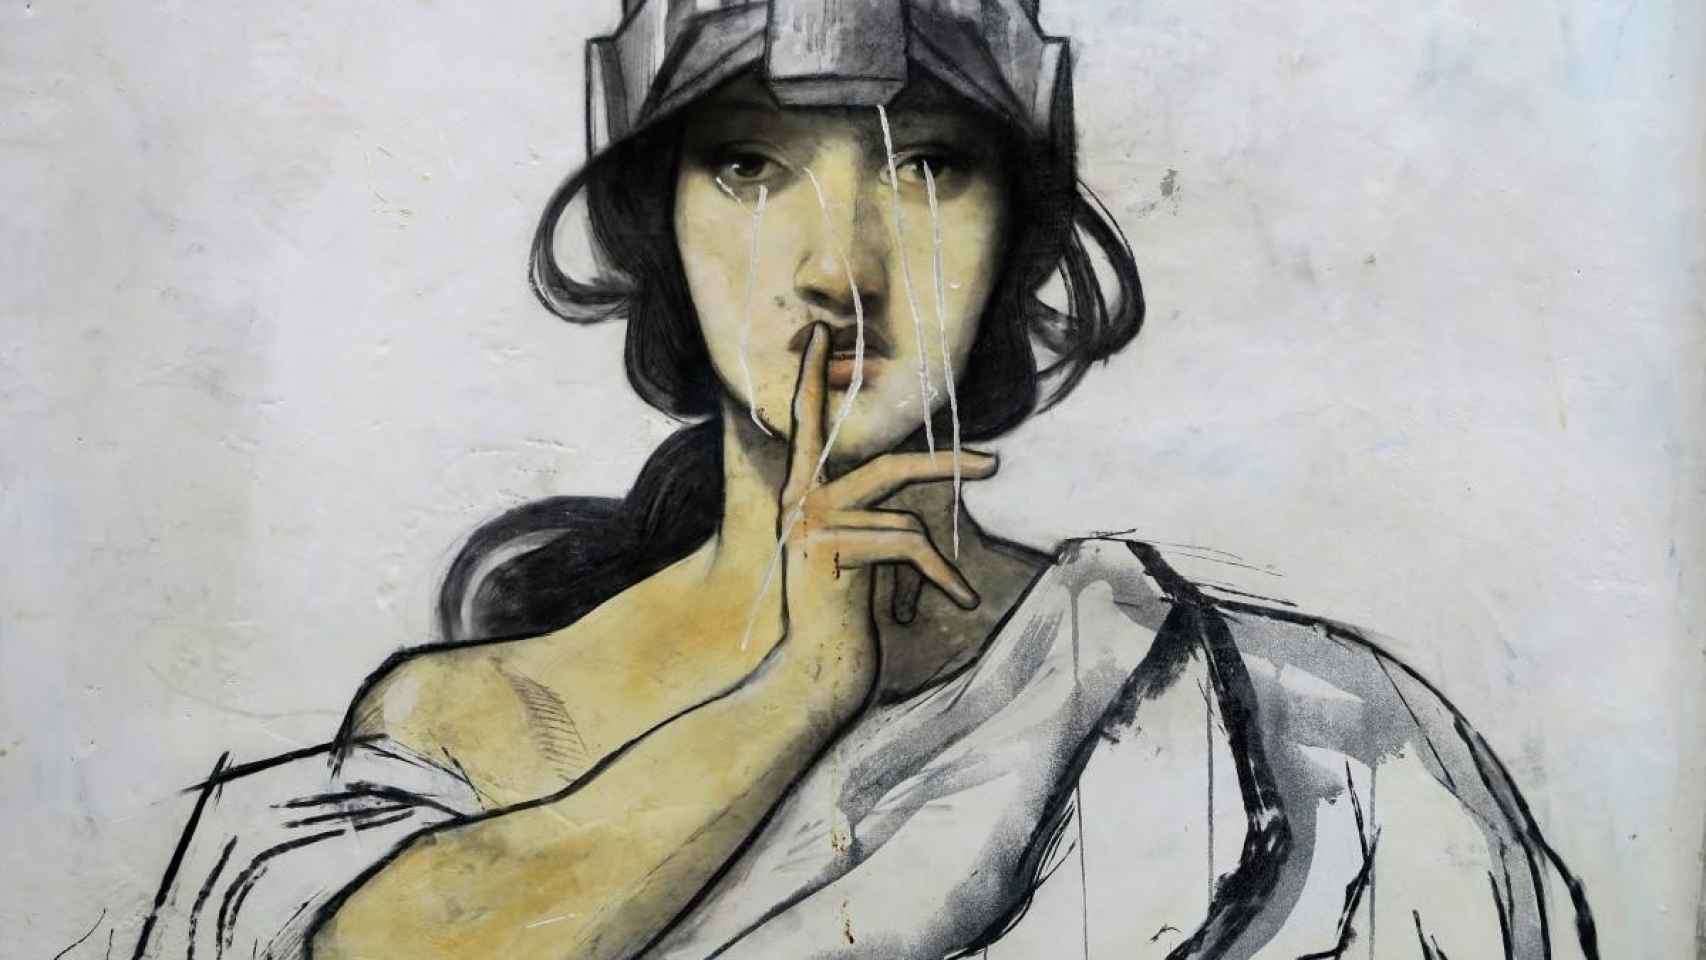 Mural callejero donde la figura de una mujer pide silencio. Ruido